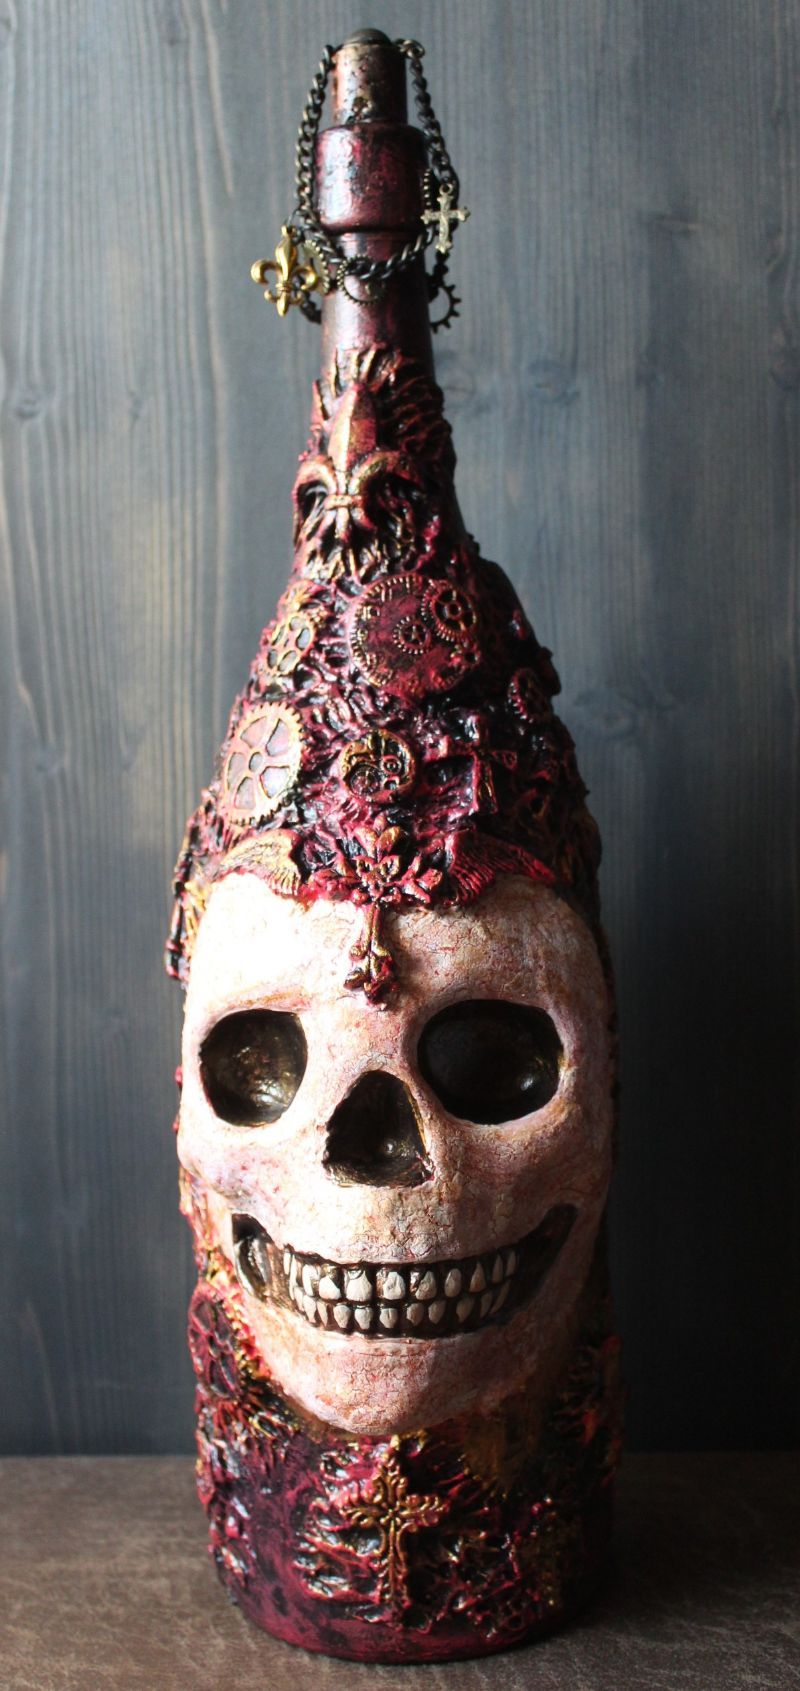 Totenkopf NEWBORN Acrylmalerei auf einer Glasflasche Gothic Steampunk Skull  Schädel Geschenk für Männer Upcycling Deko Bikergeschenk